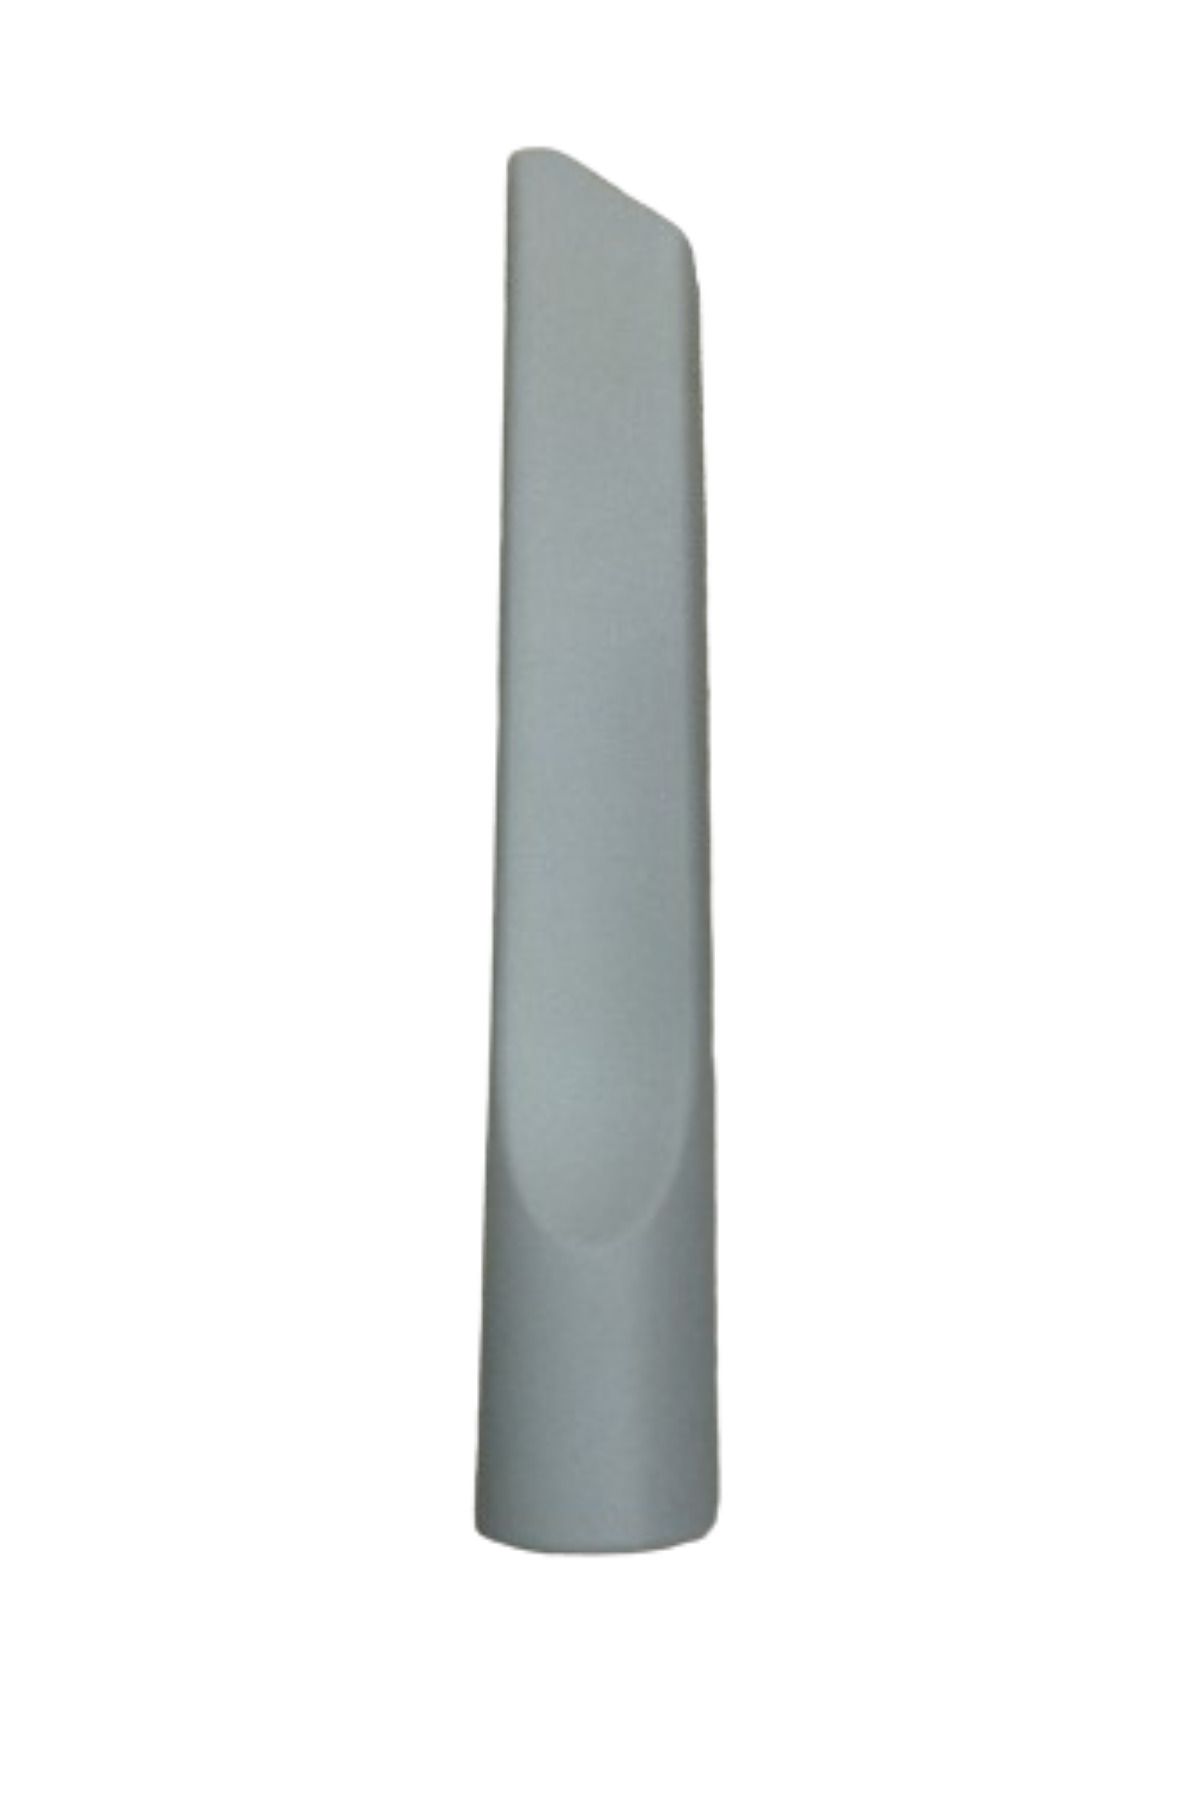 Hotpoint Sl B24 Aa0 Süpürge Koltuk Arası Düz Emici Başlık Gri Renk(22,5 cm)